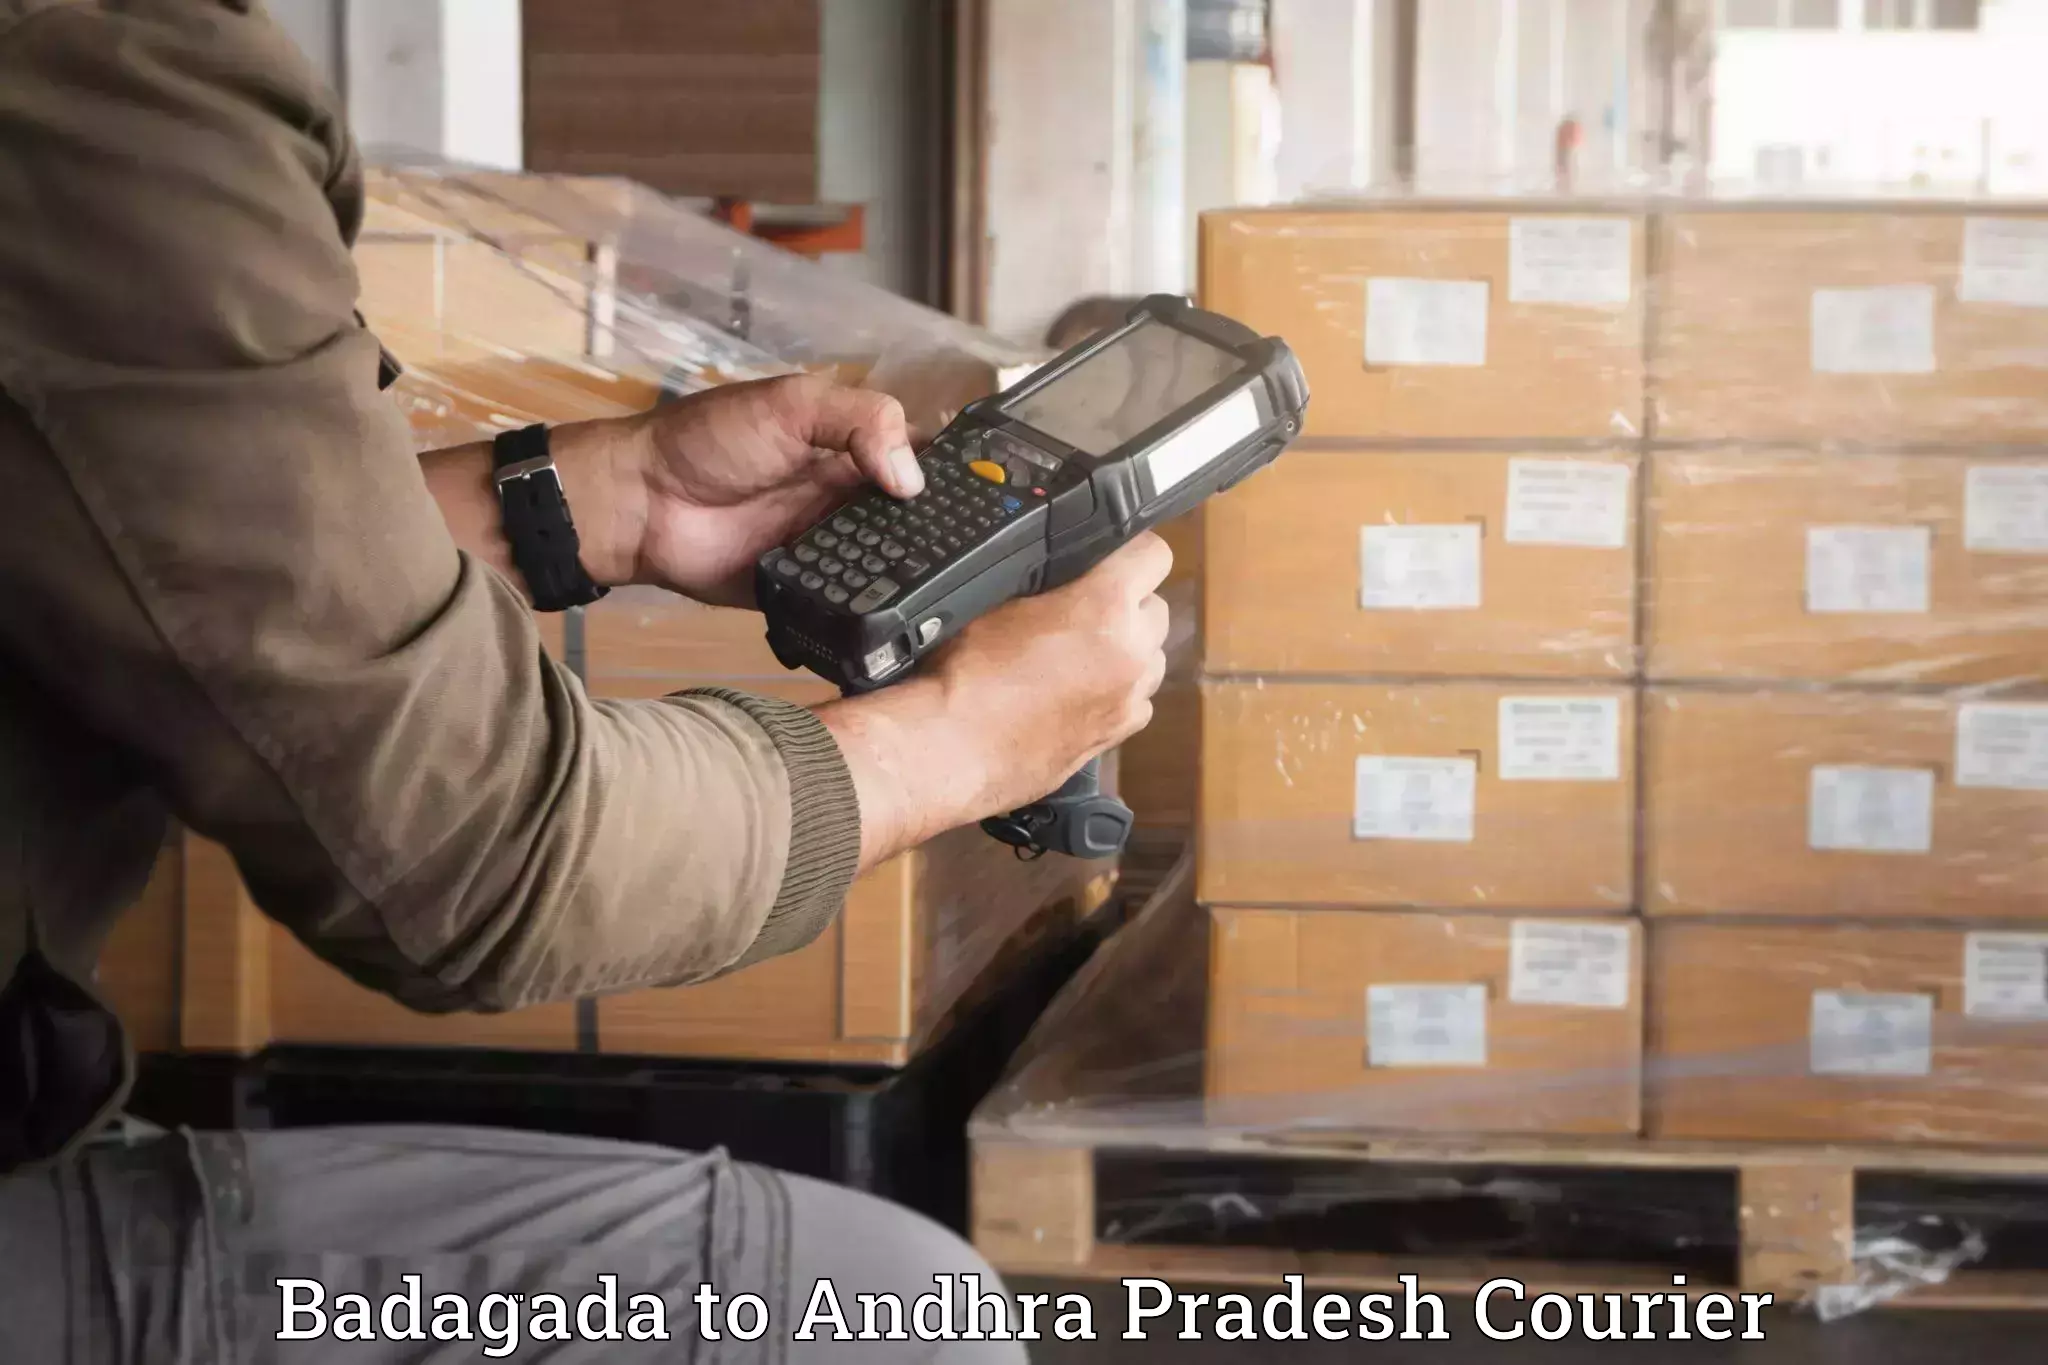 Furniture moving services Badagada to Andhra Pradesh